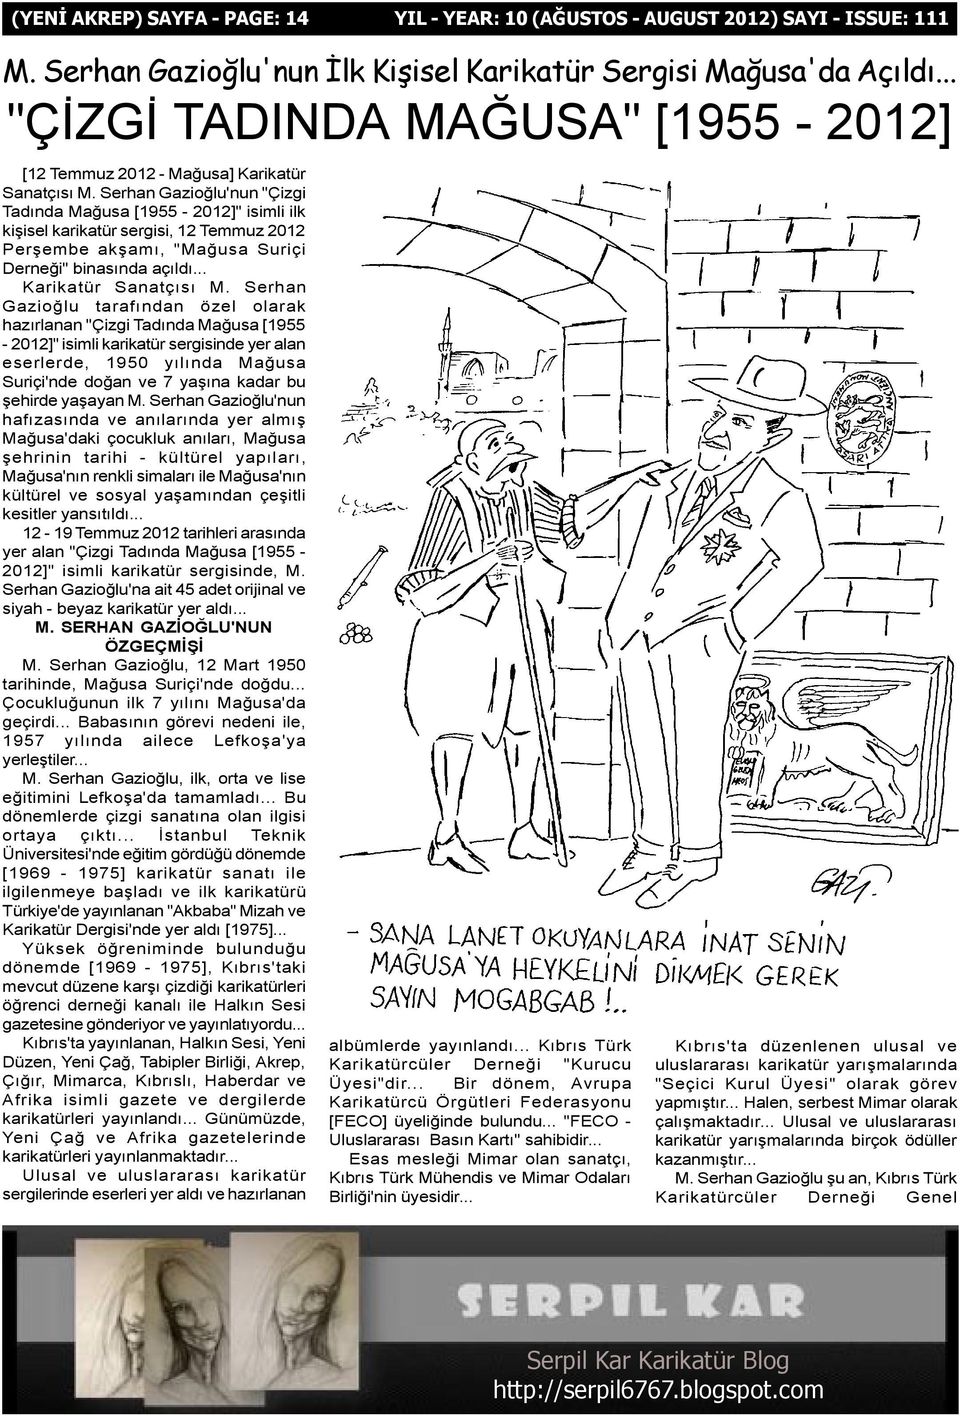 Serhan Gazioðlu'nun "Çizgi Tadýnda Maðusa [1955-2012]" isimli ilk kiþisel karikatür sergisi, 12 Temmuz 2012 Perþembe akþamý, "Maðusa Suriçi Derneði" binasýnda açýldý... Karikatür Sanatçýsý M.